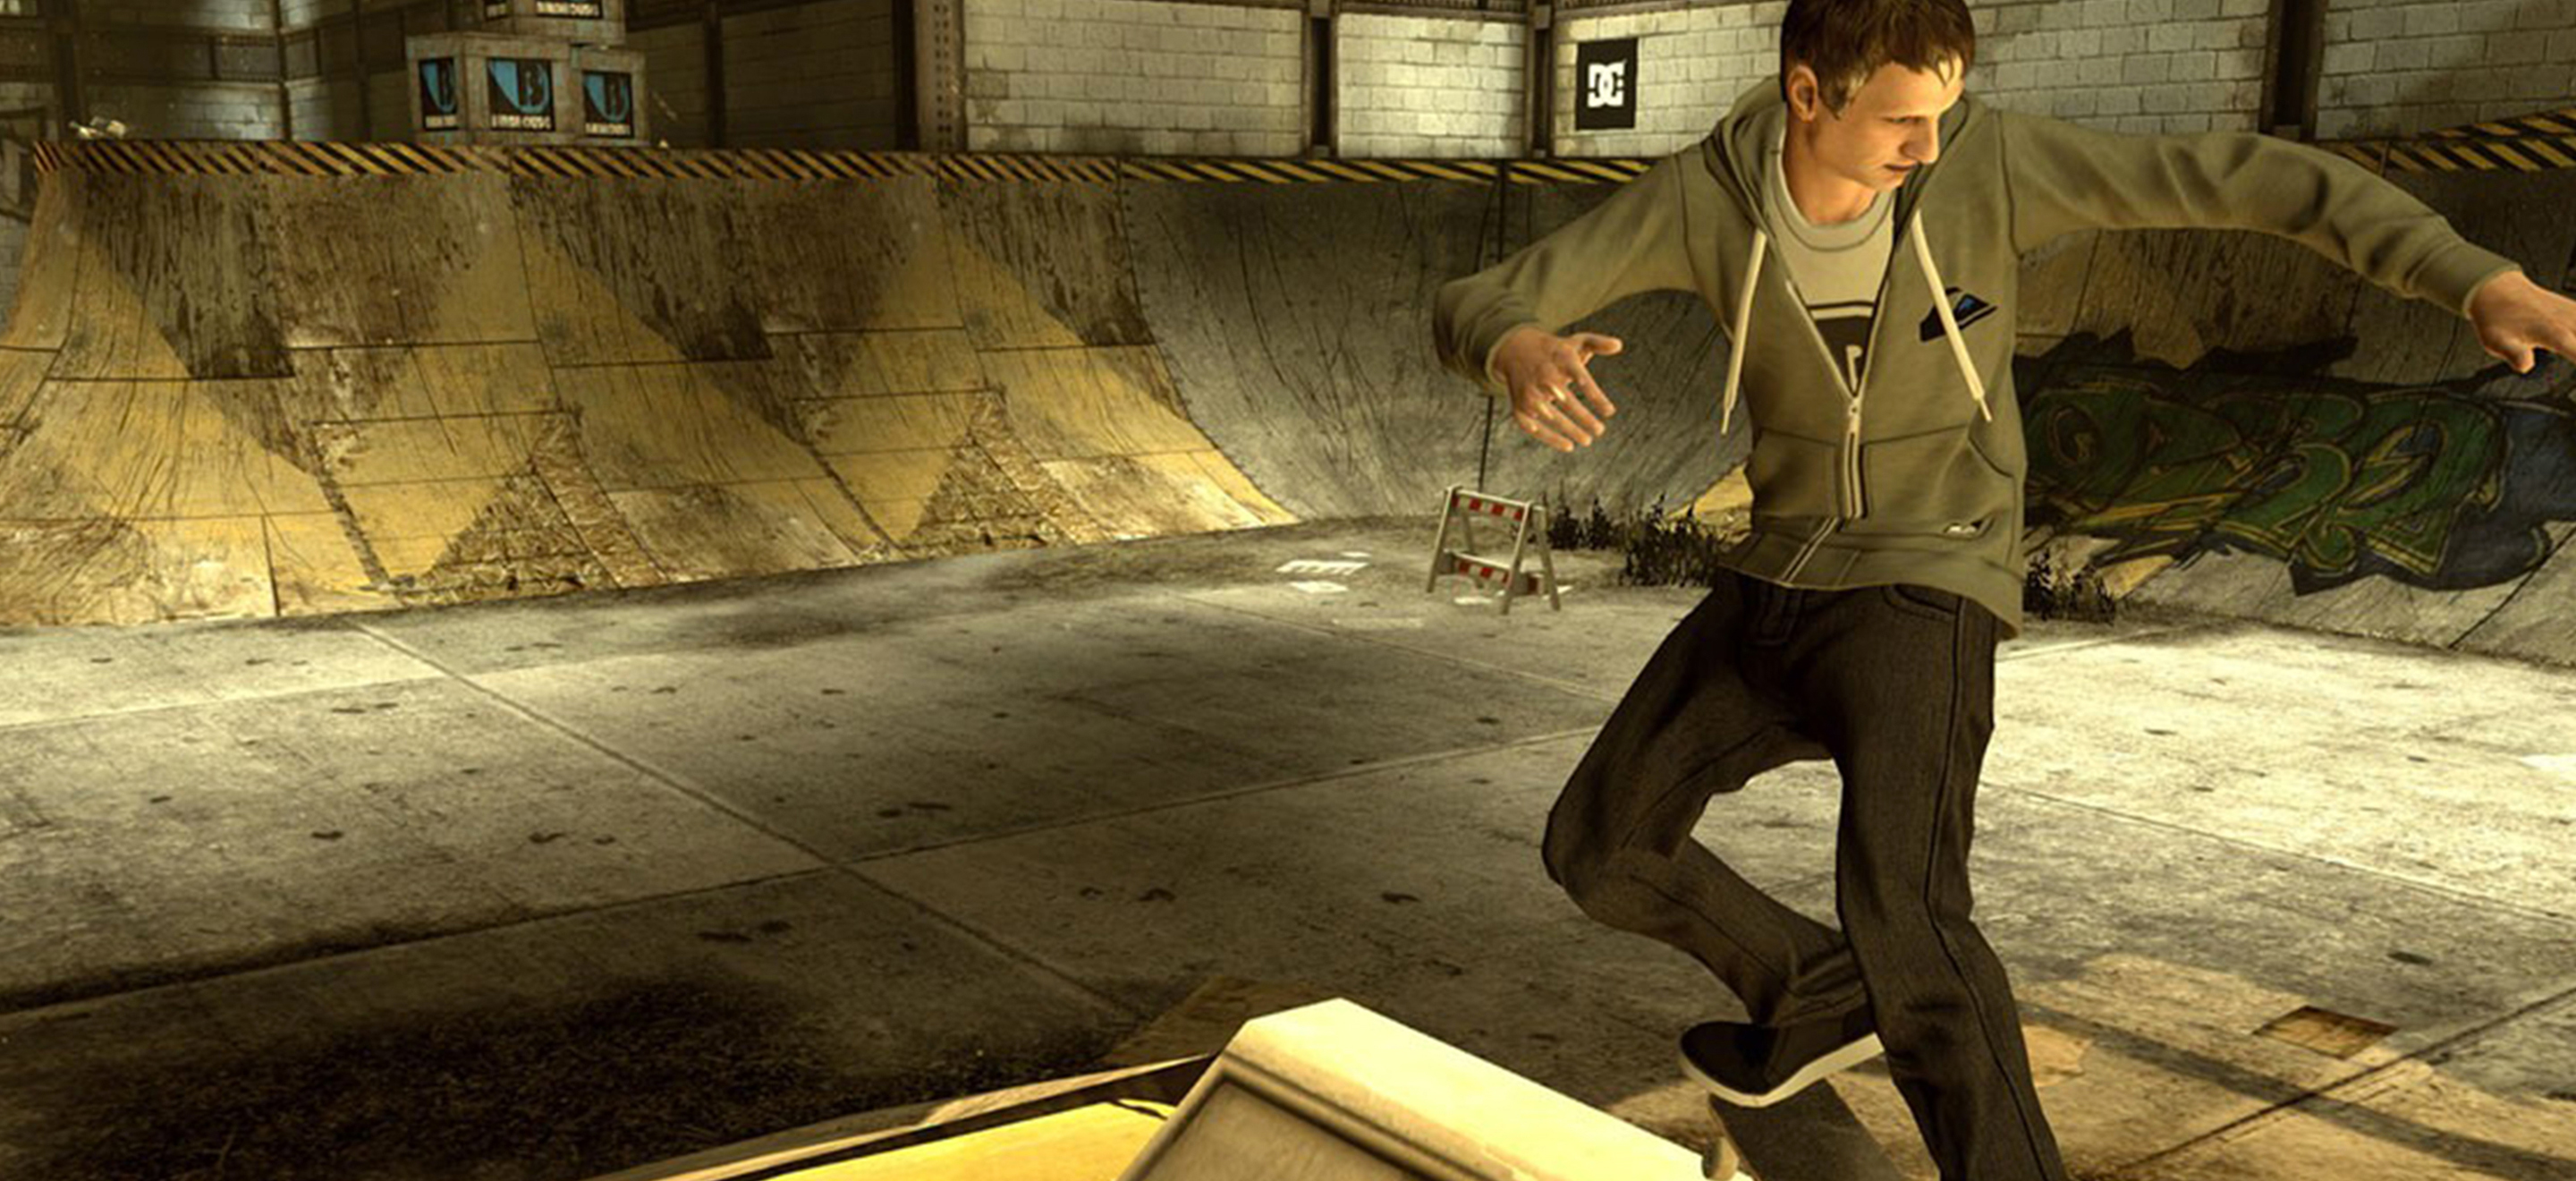 Pourquoi Tony Hawk’s Pro Skater mérite un remake